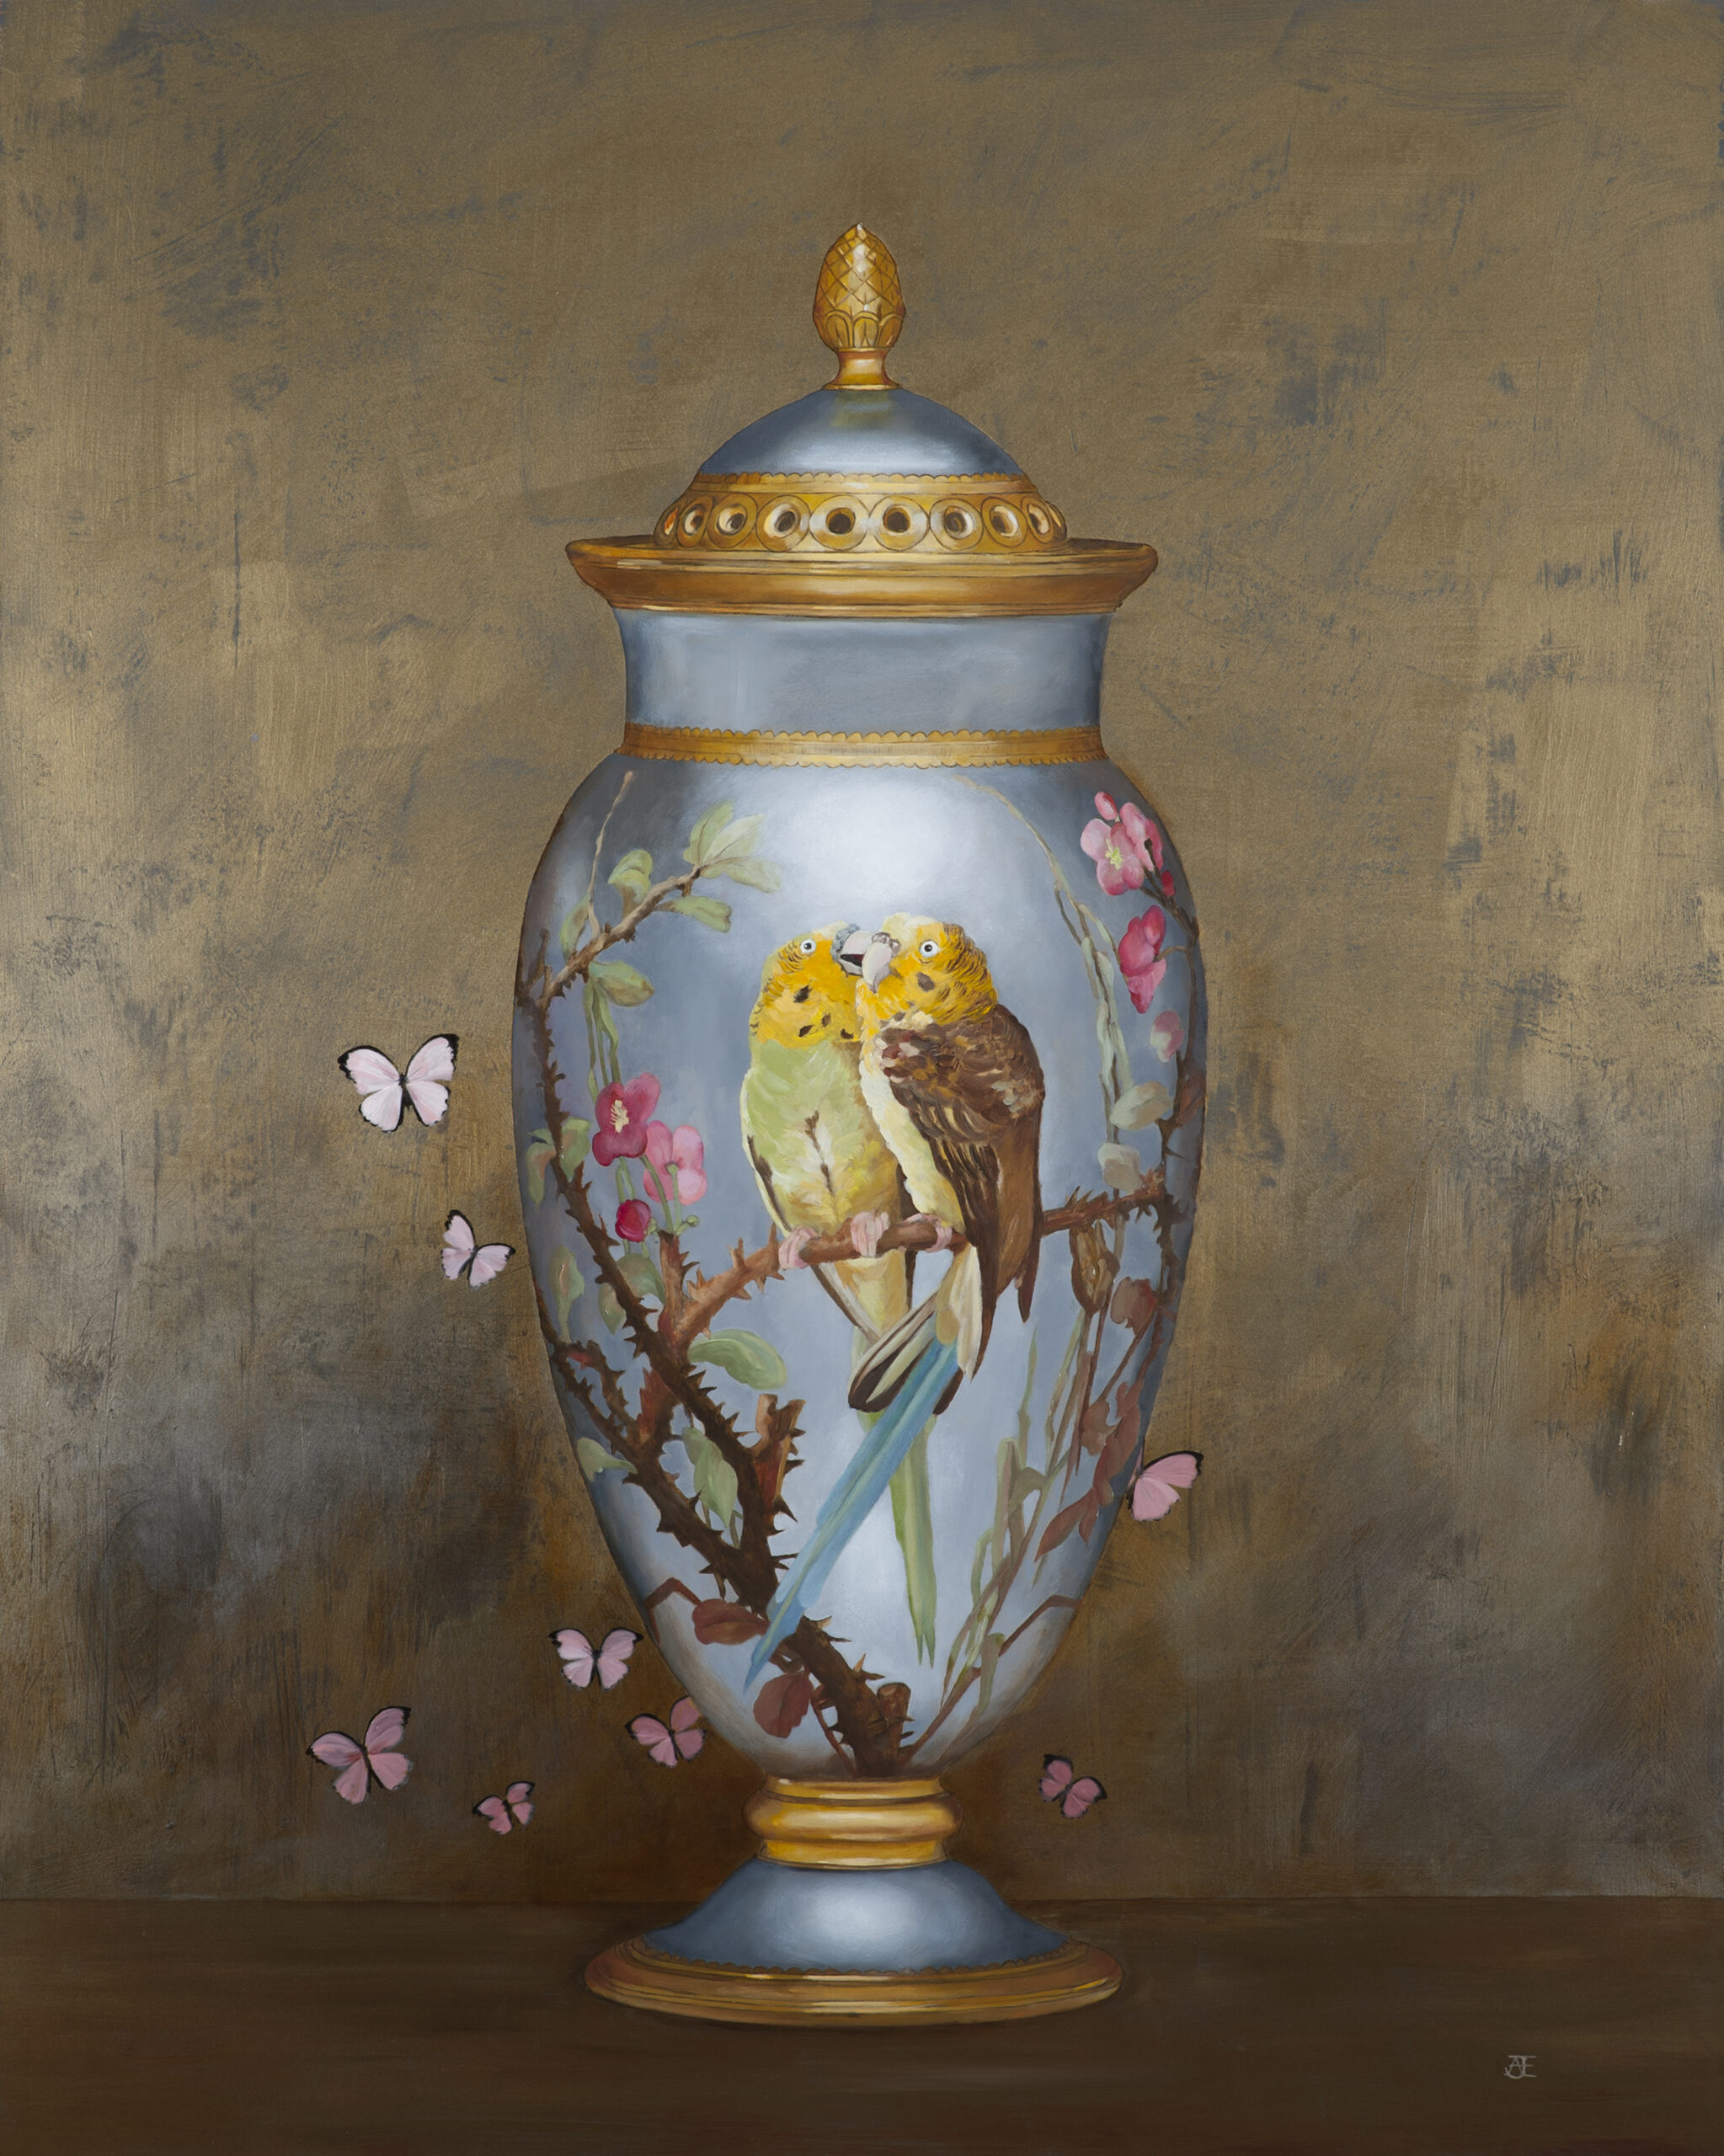 Een olieverfportret op een paneel van 80 x 100 cm, toont een Chinese vaas met twee prachtige gele vogels op een tak van een kersenbloesem, rond de vaas fladderen roze geschilderde vlinders. De achtergrond is geschilderd in goudbruine tinten met een lichte textuur. Dit vrije kunstwerk is in 2021 geschilderd door Anneke Ensing.